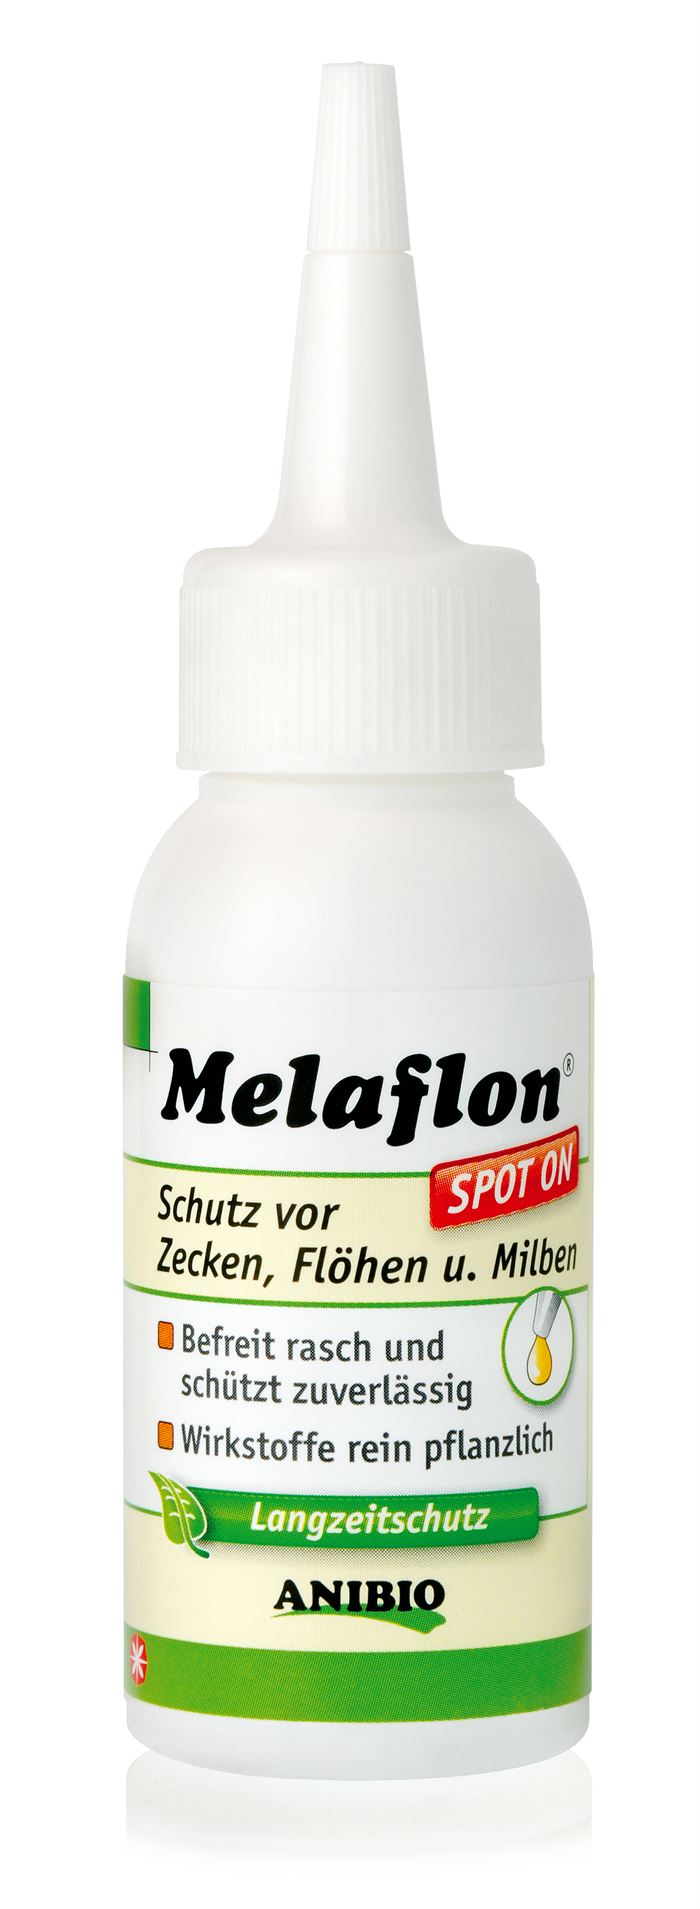 ANIBIO Spot-on 50 ml. melaflon flaske